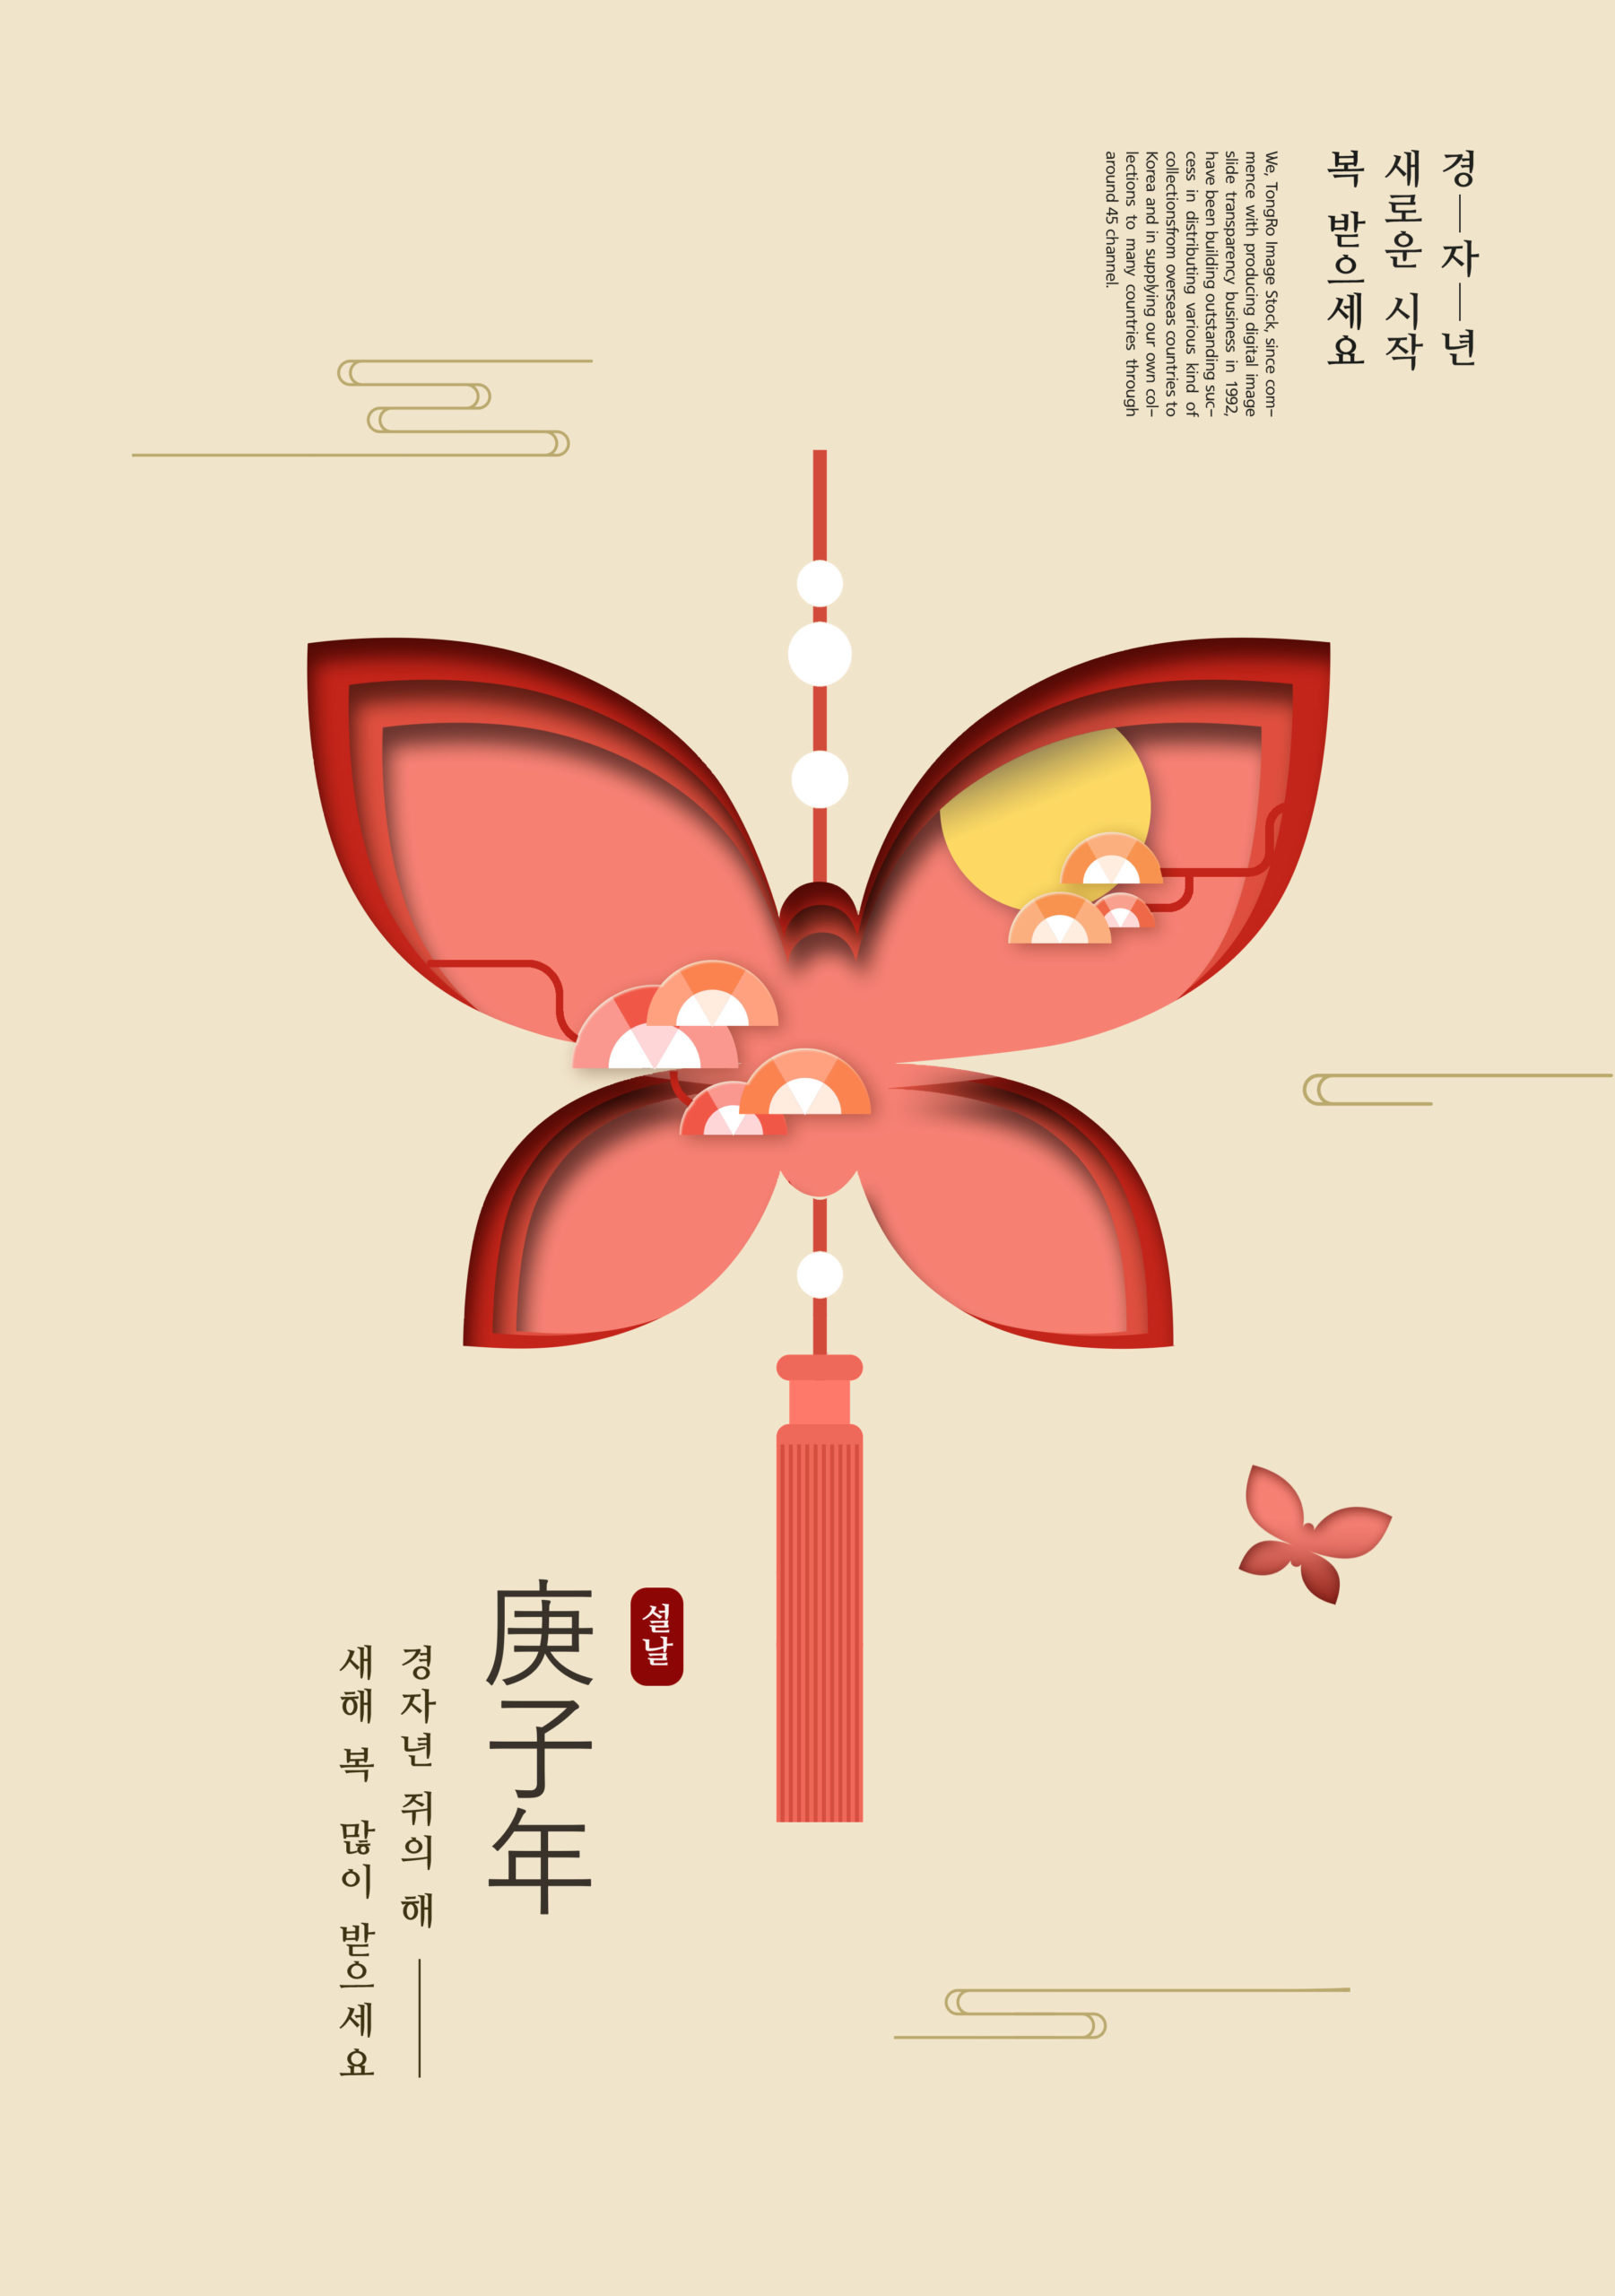 古典蝴蝶中国结元素新年主题海报psd素材插图